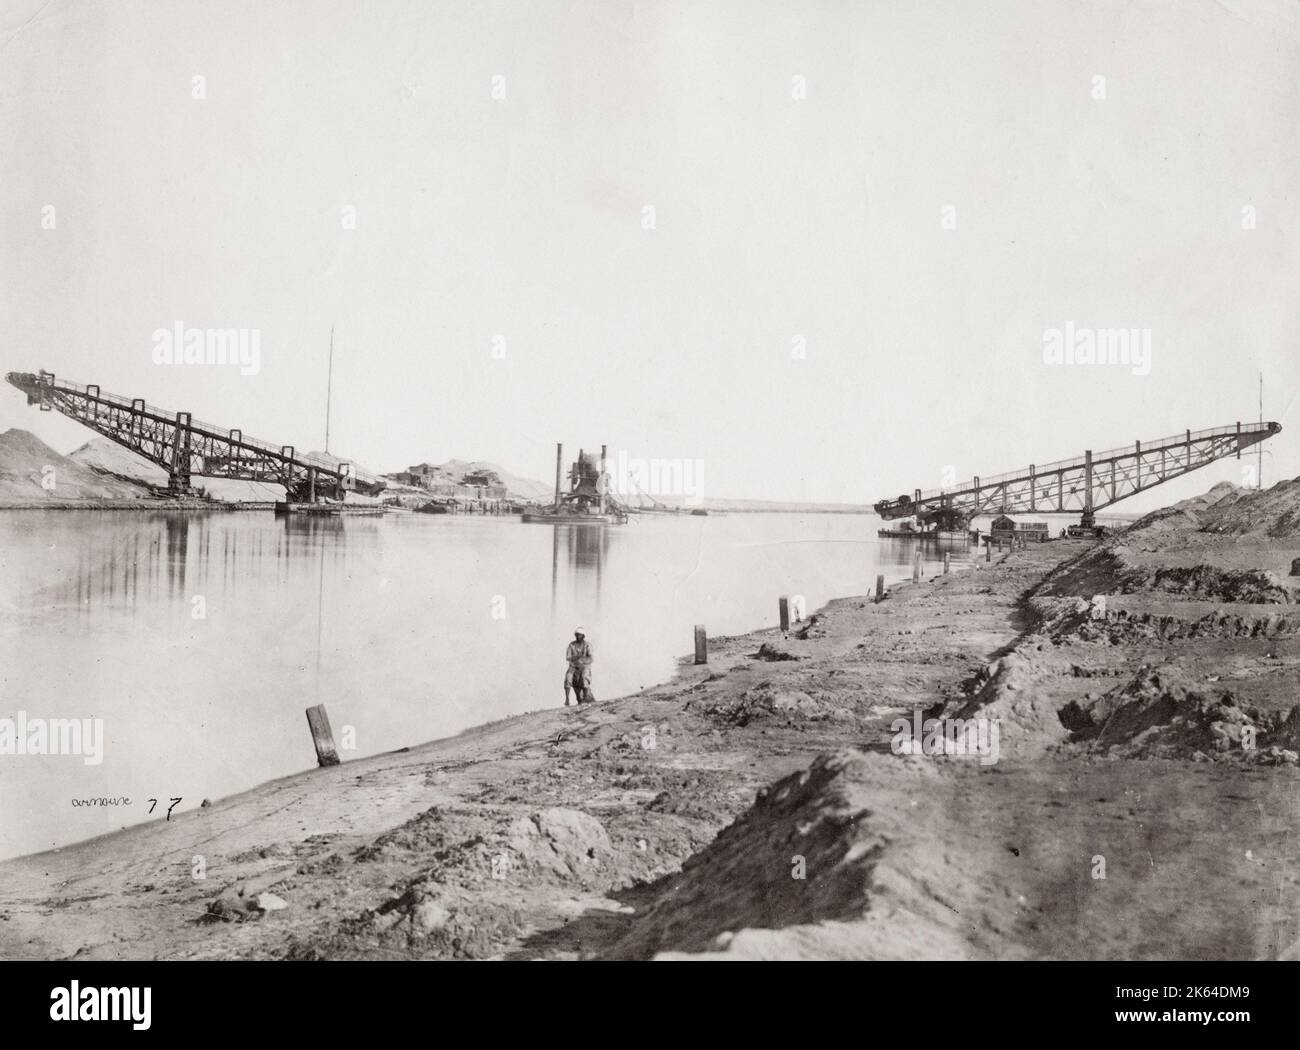 Vintage-Foto des 19. Jahrhunderts: Dampfbagger auf dem Suezkanal, um 1890. Stockfoto